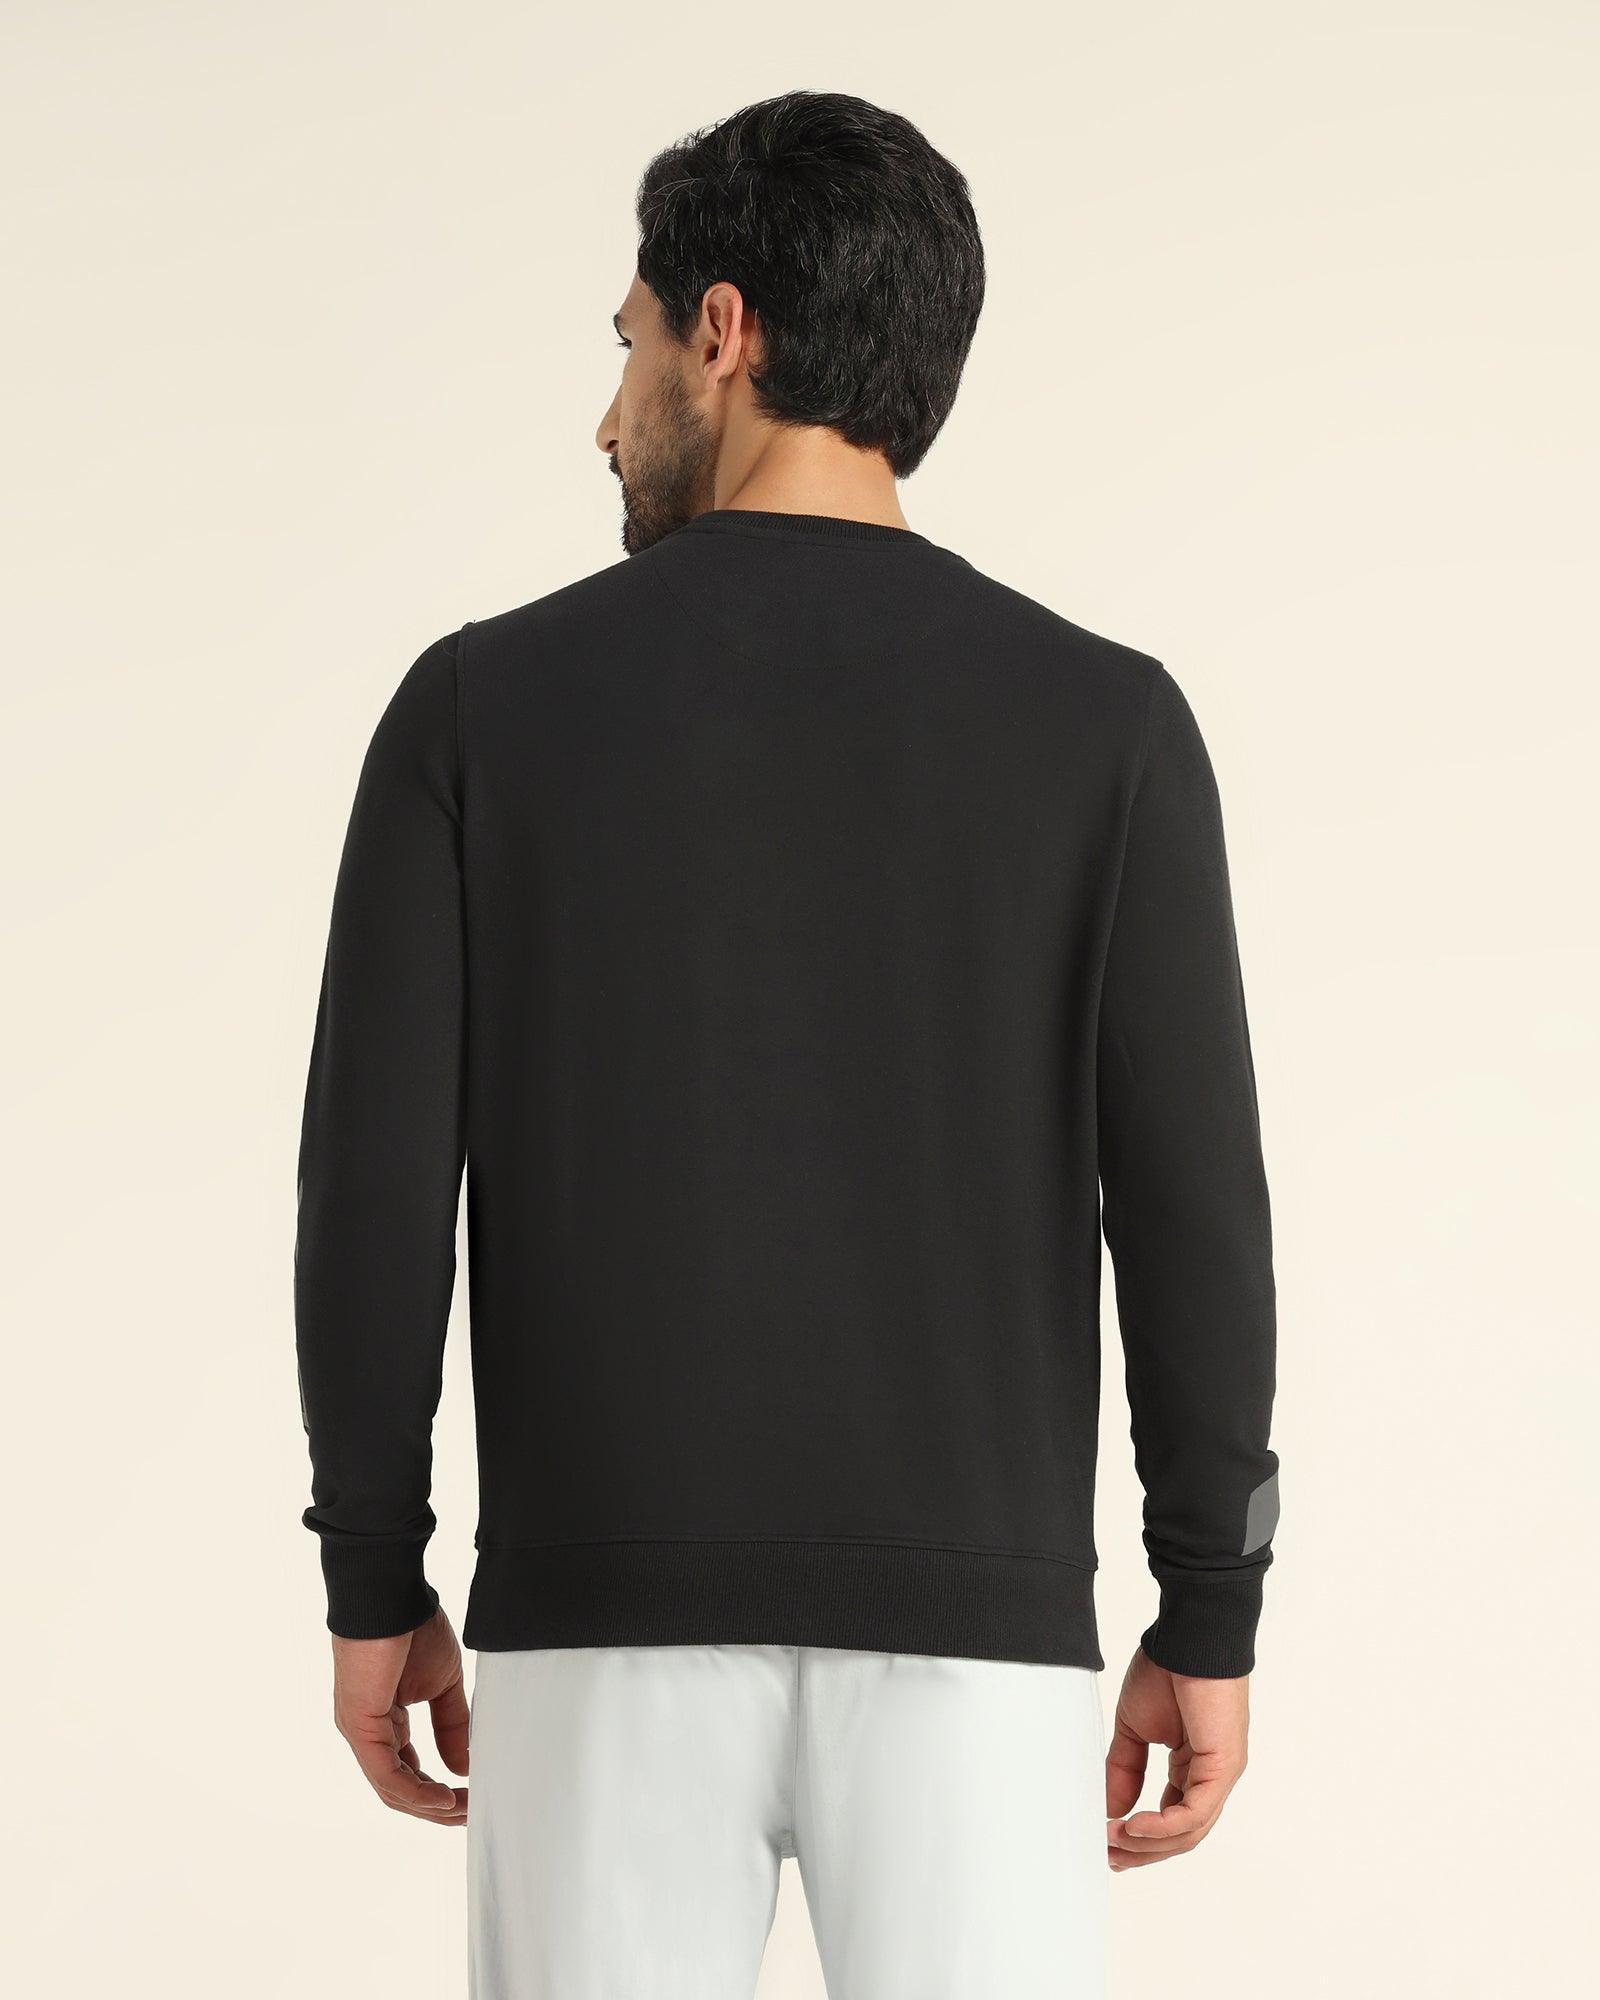 Crew Neck Black Solid Sweatshirt - Chandler